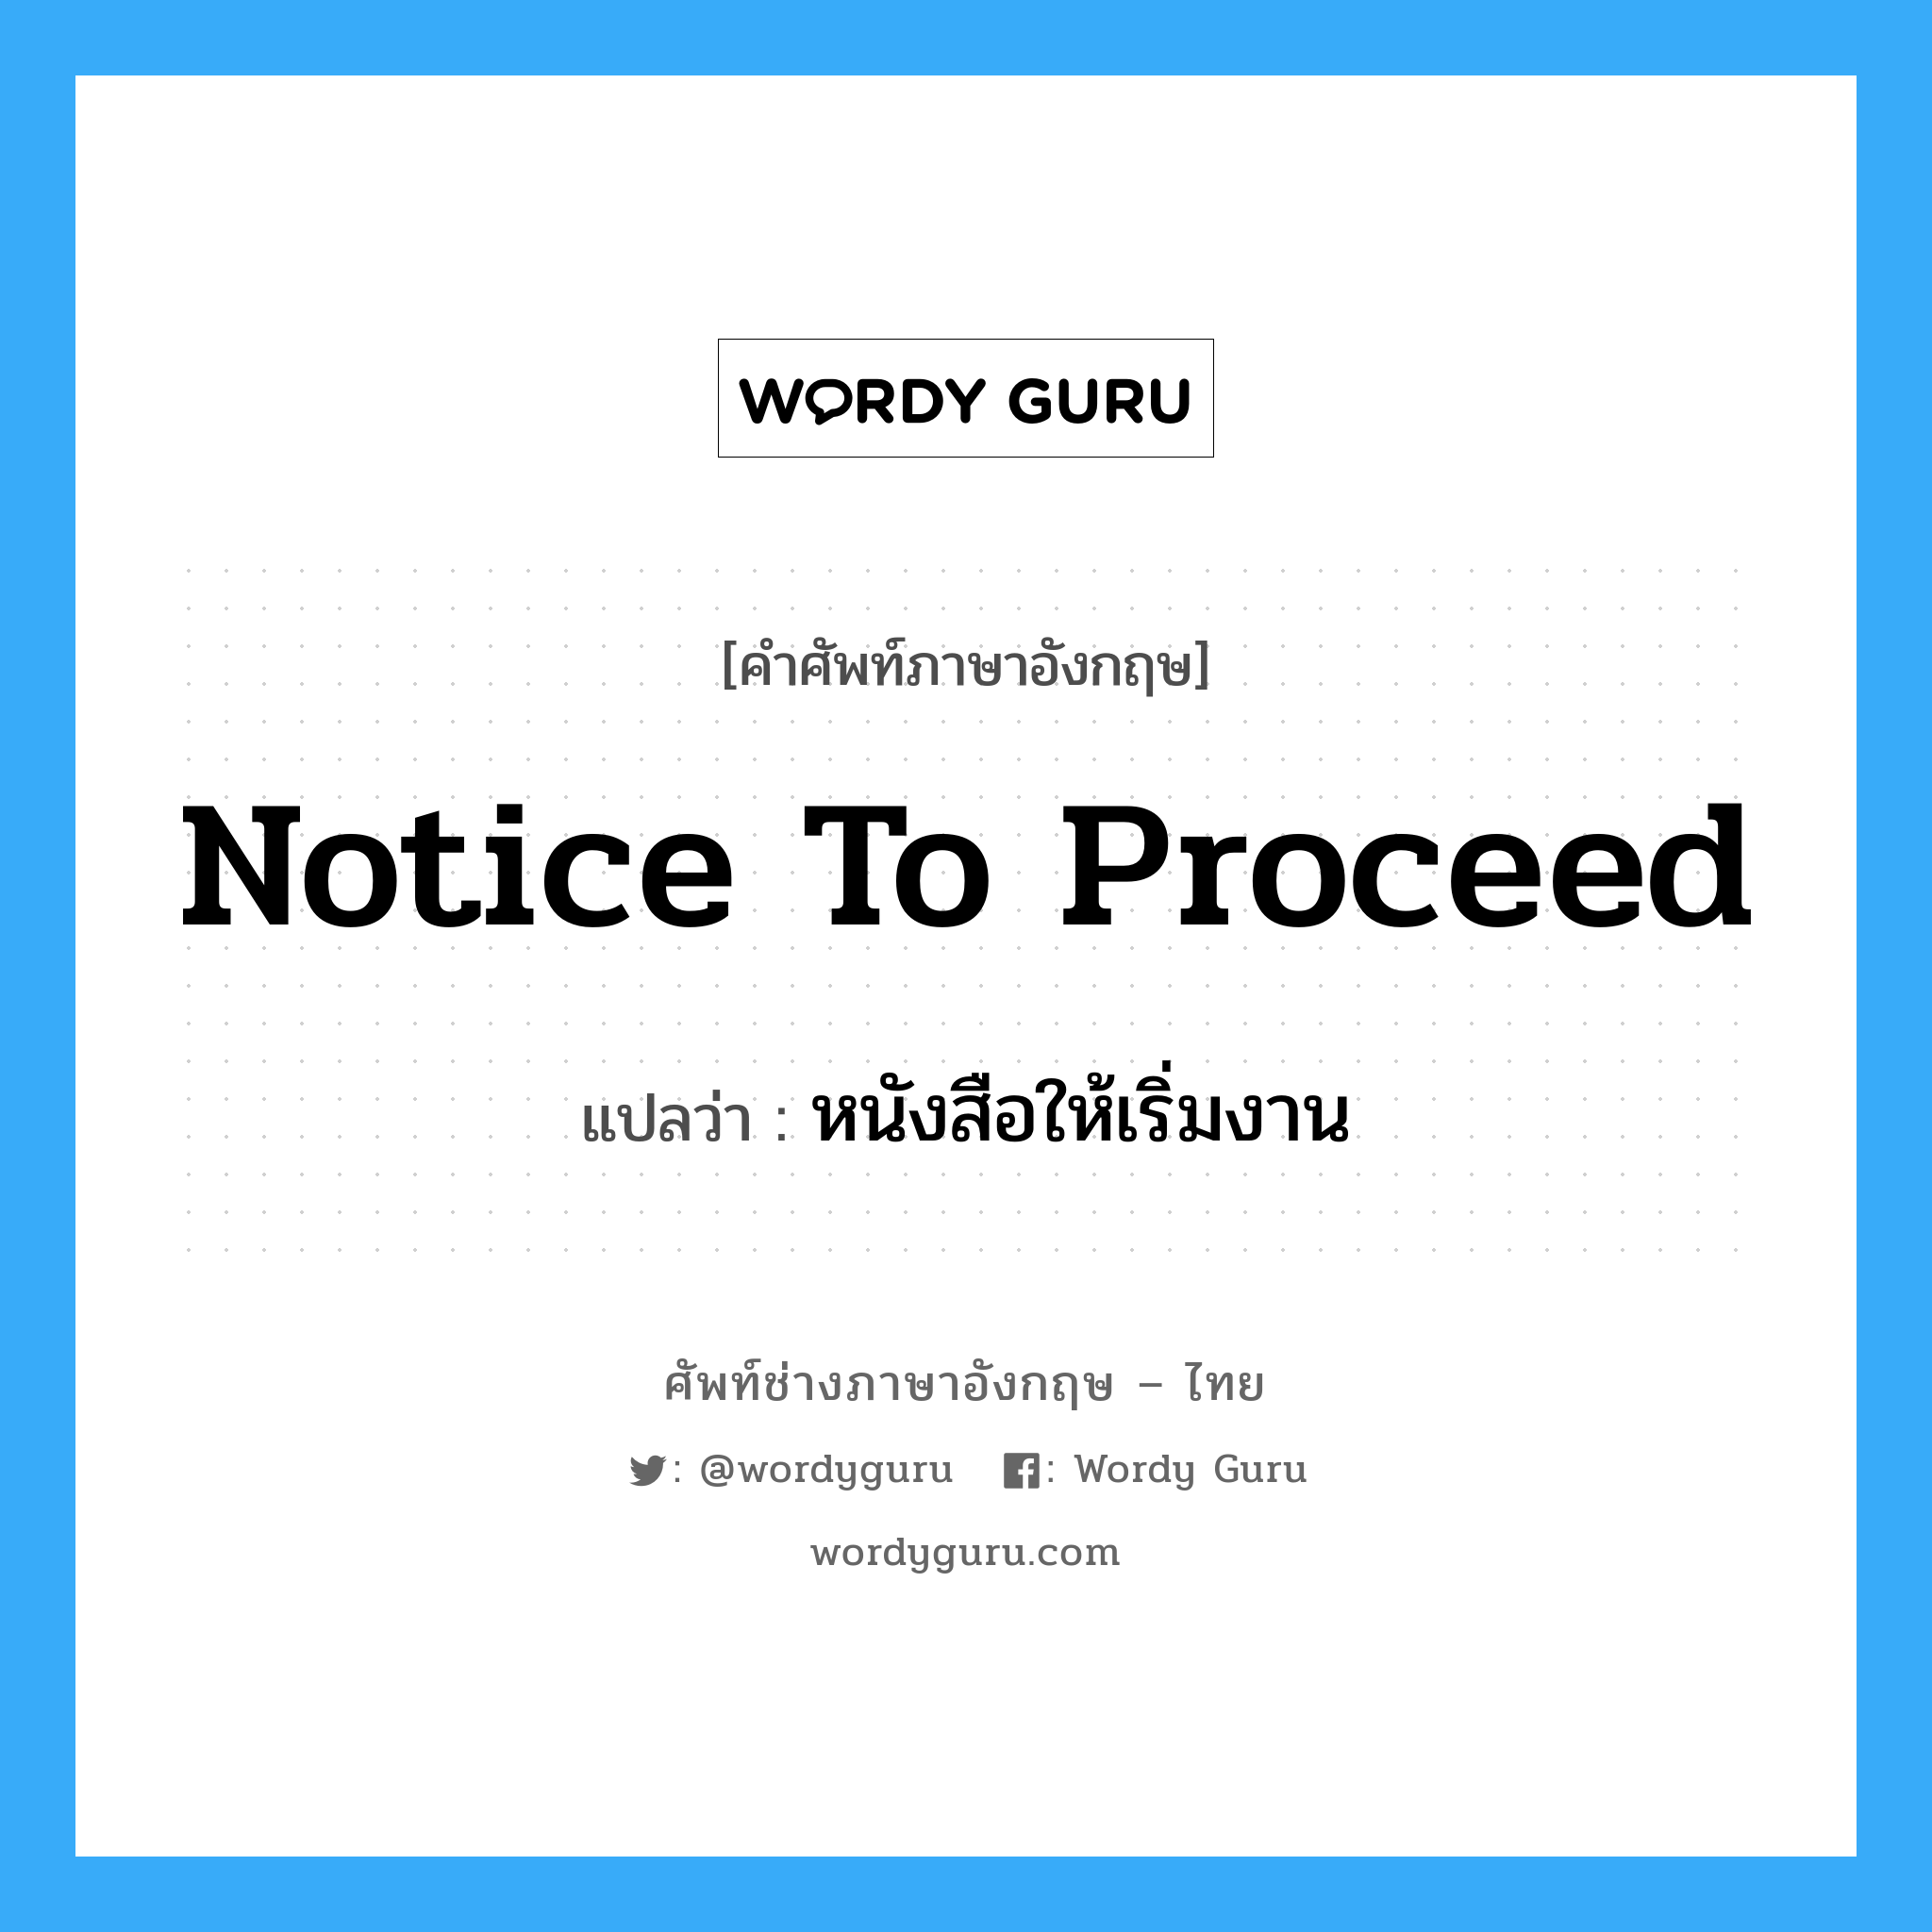 Notice to Proceed แปลว่า?, คำศัพท์ช่างภาษาอังกฤษ - ไทย Notice to Proceed คำศัพท์ภาษาอังกฤษ Notice to Proceed แปลว่า หนังสือให้เริ่มงาน